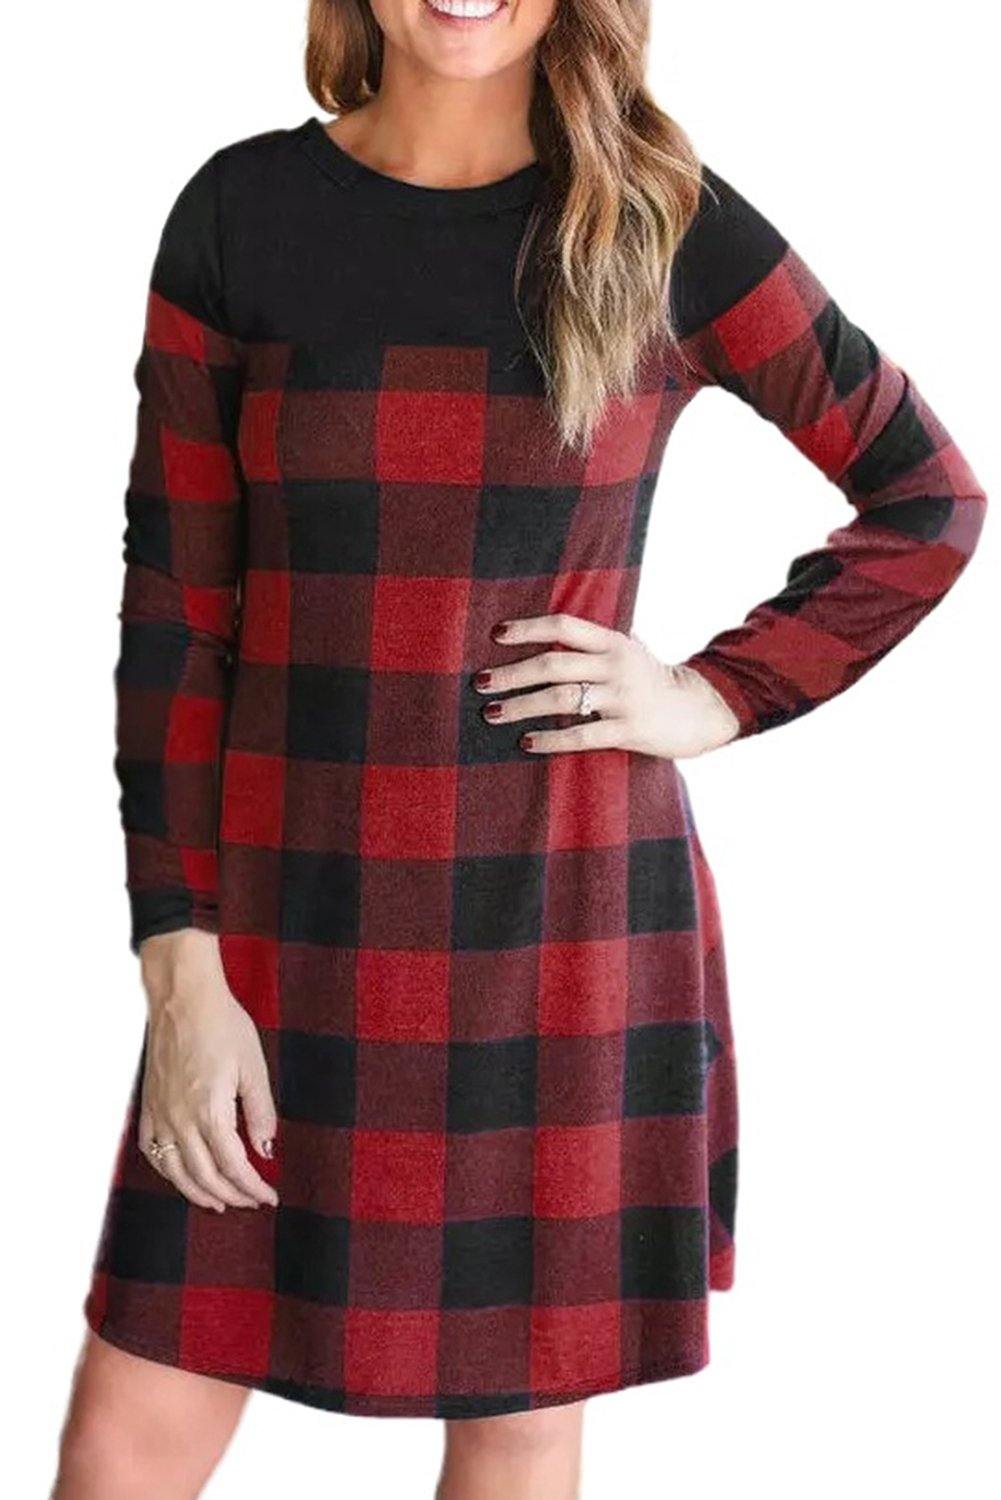 Buffalo Plaid Splicing Long Sleeve Mini Dress - L & M Kee, LLC